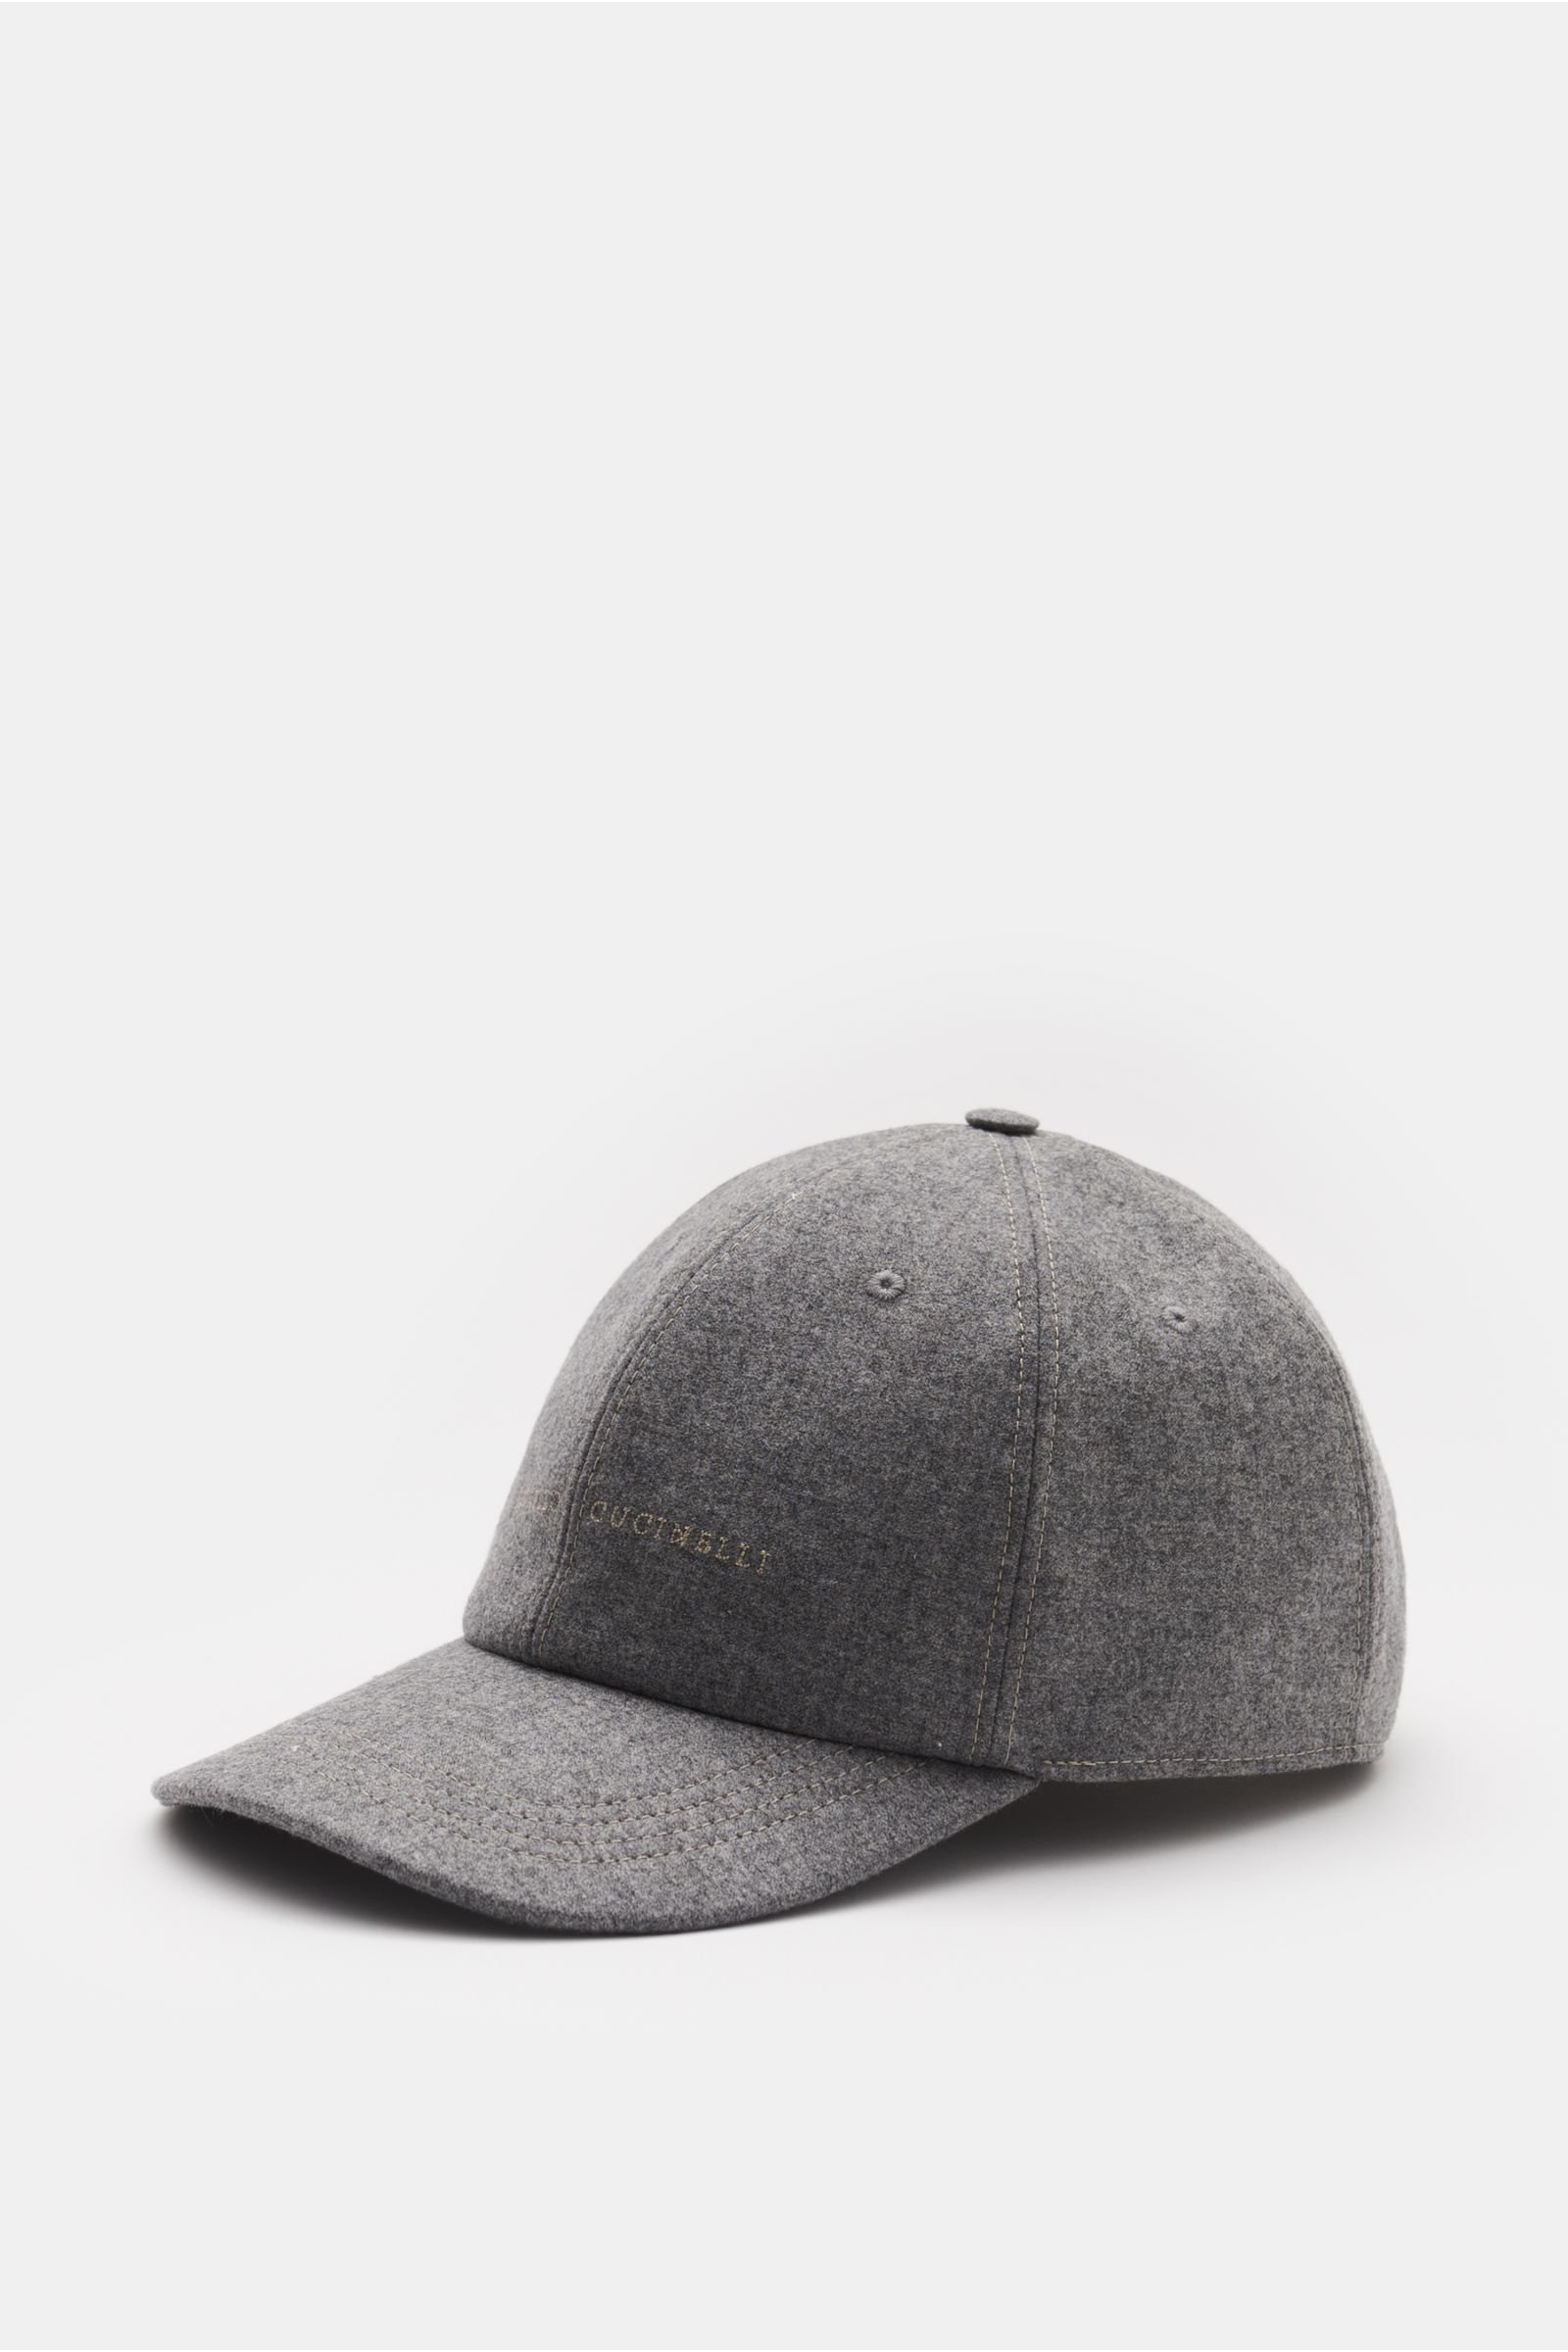 Baseball cap grey